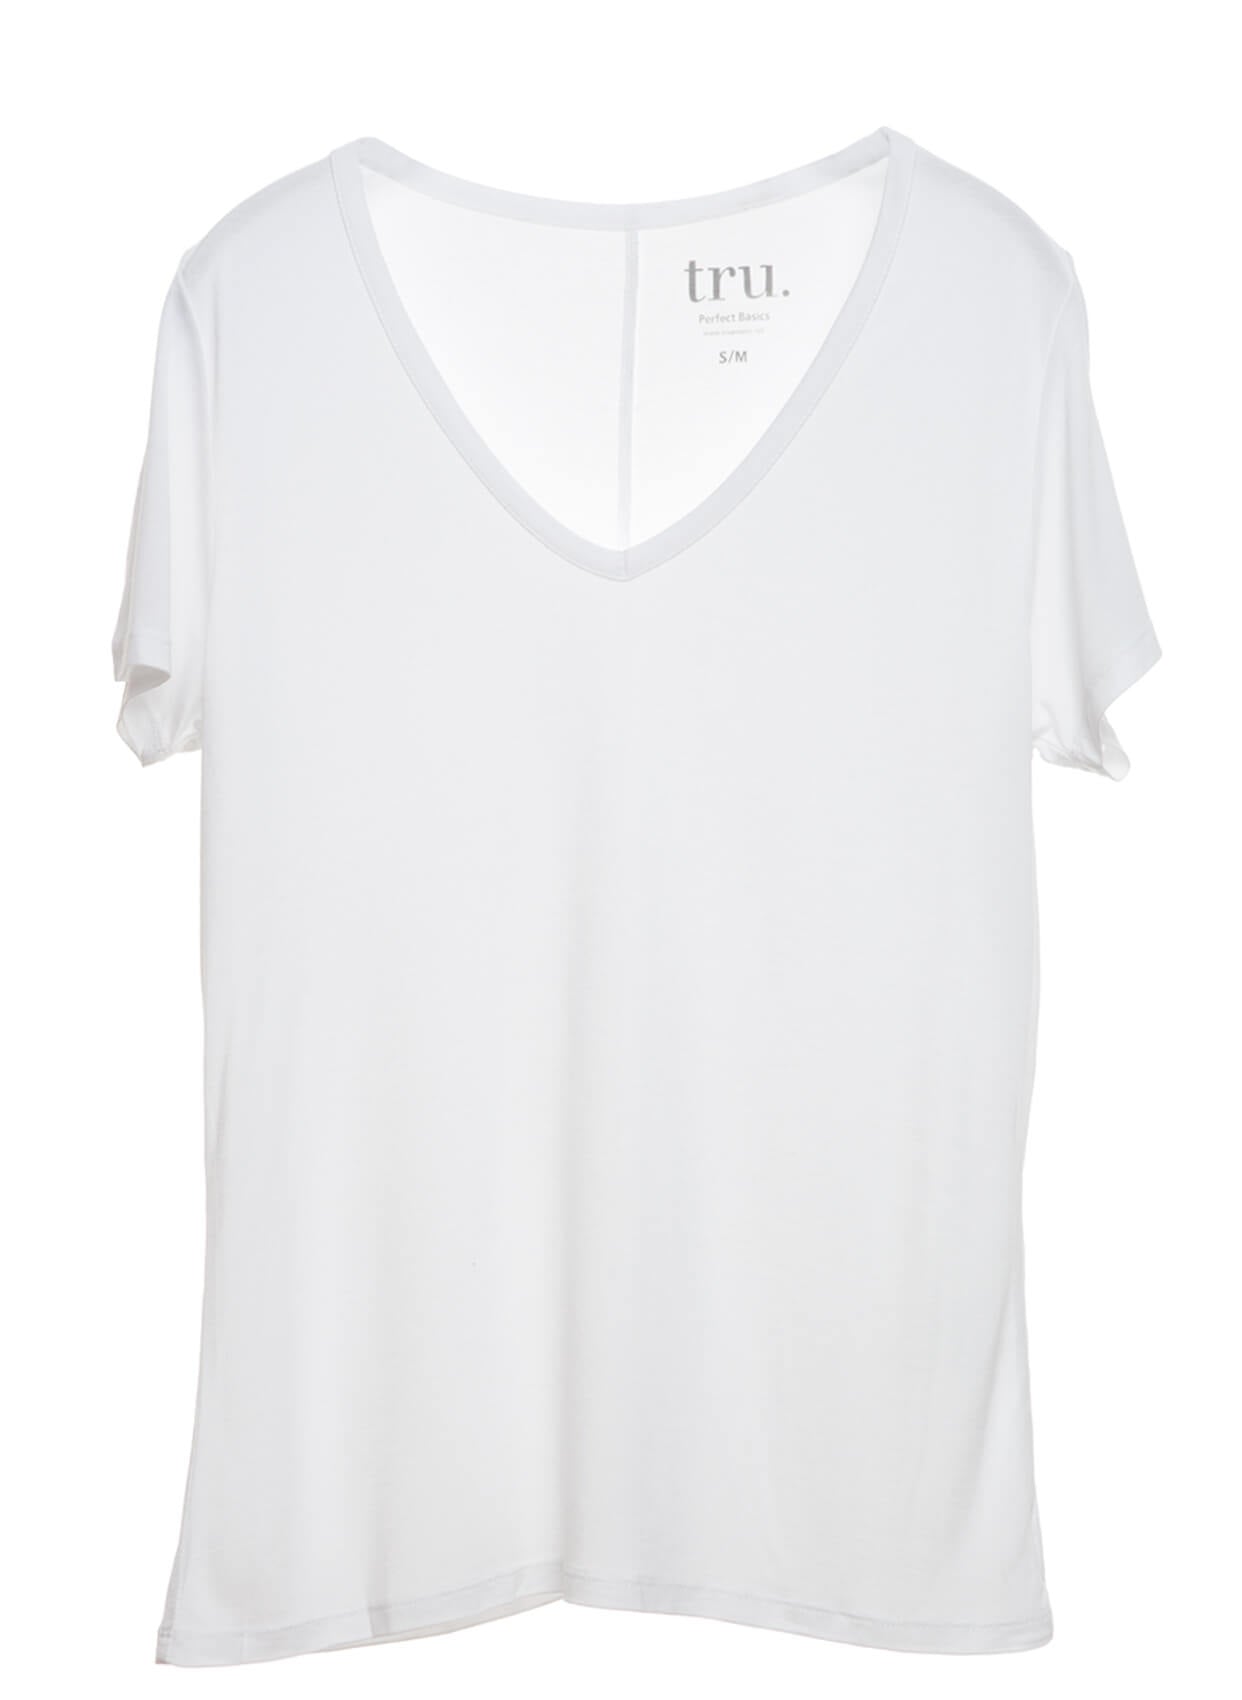 TRU T-SHIRT-Libas Trendy Fashion Store